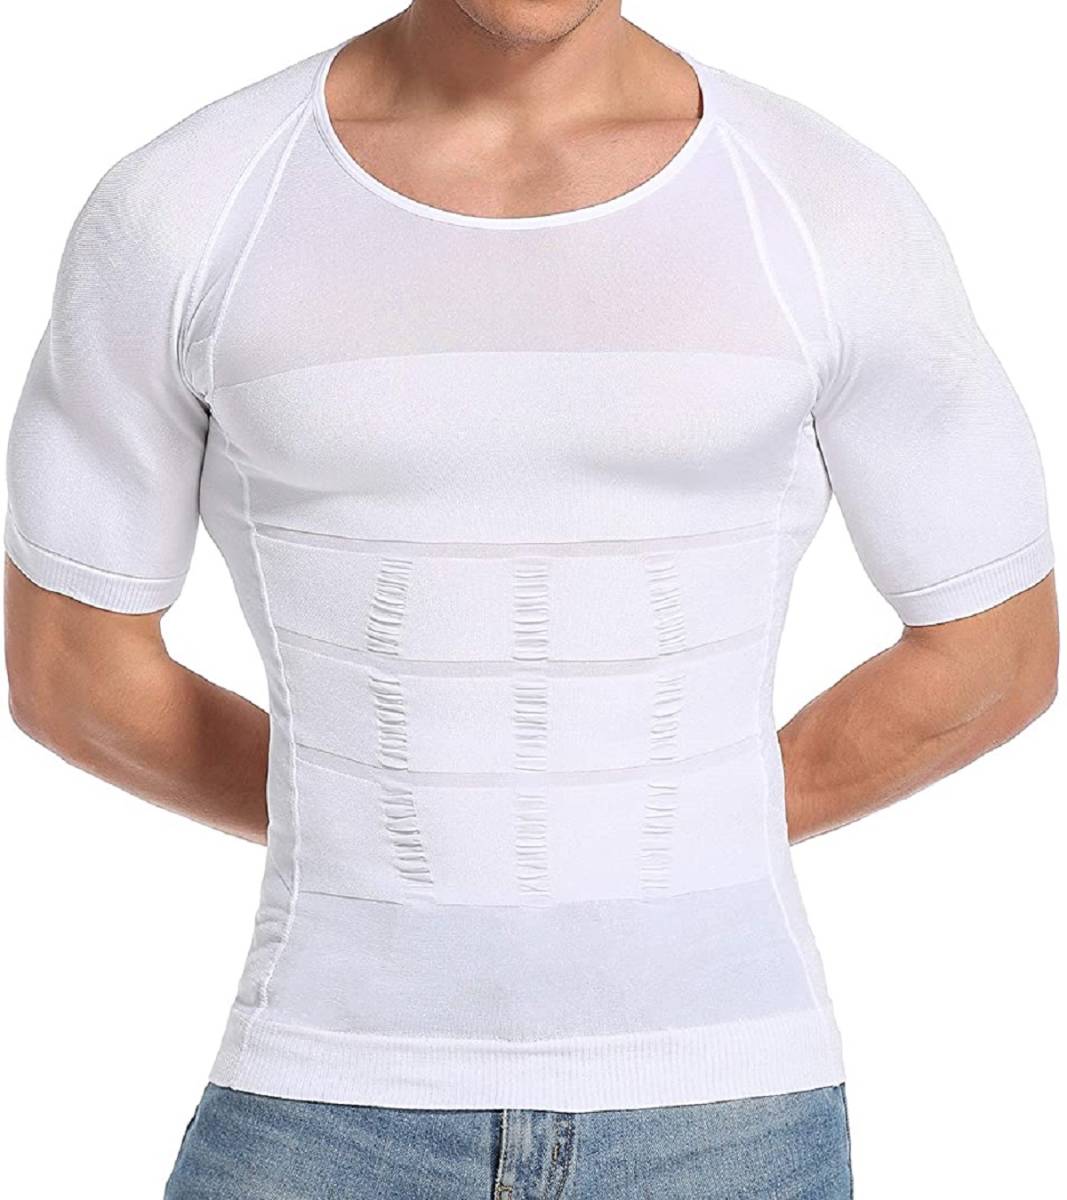 加圧インナー Tシャツ 姿勢強制 腹筋引締め 加圧シャツ Mサイズ ホワイト 白 ○スーパーSALE○ セール期間限定